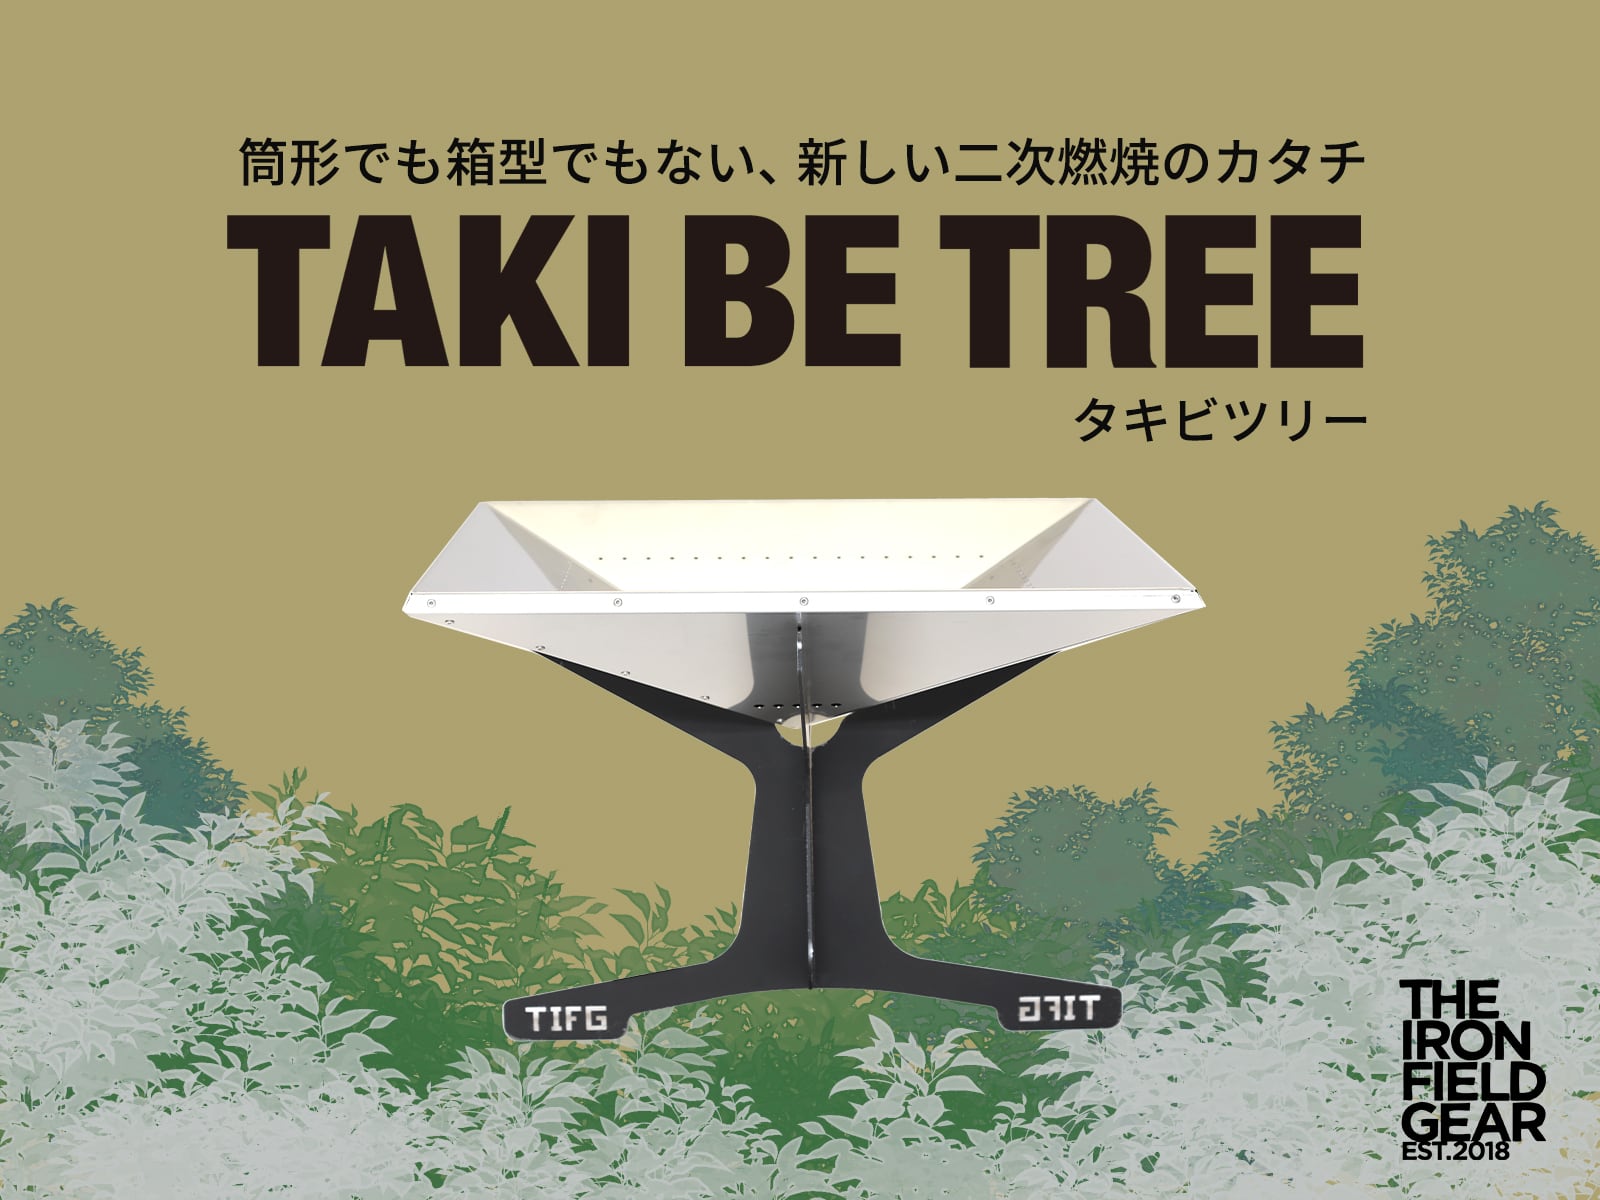 革新的なオープン型 二次燃焼系 焚き火台「TAKI BE TREE」で新たな